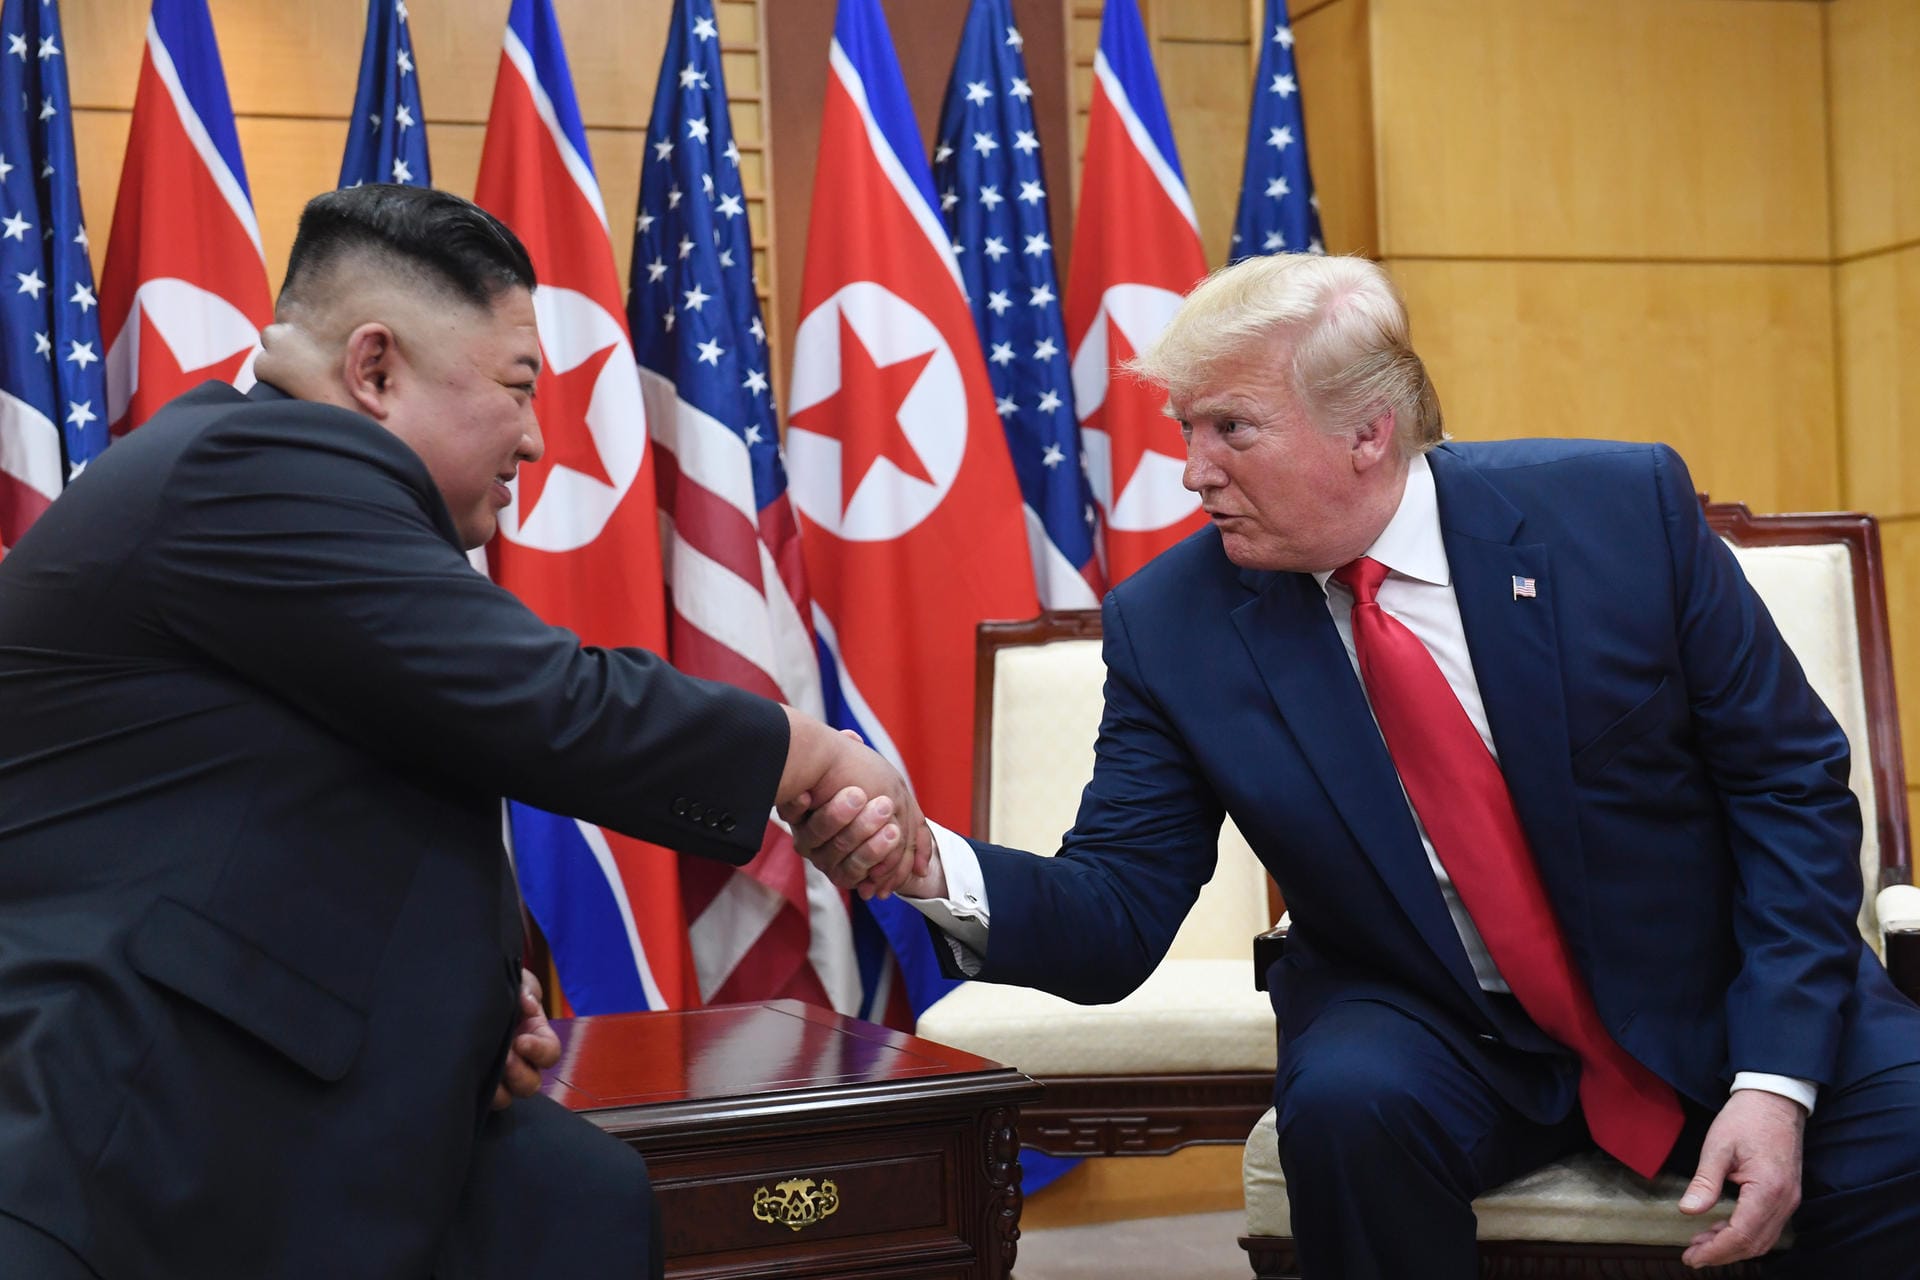 Danach setzen sich Kim und Trump für ein längeres Gespräch auf der südkoreanischen Seite zusammen.